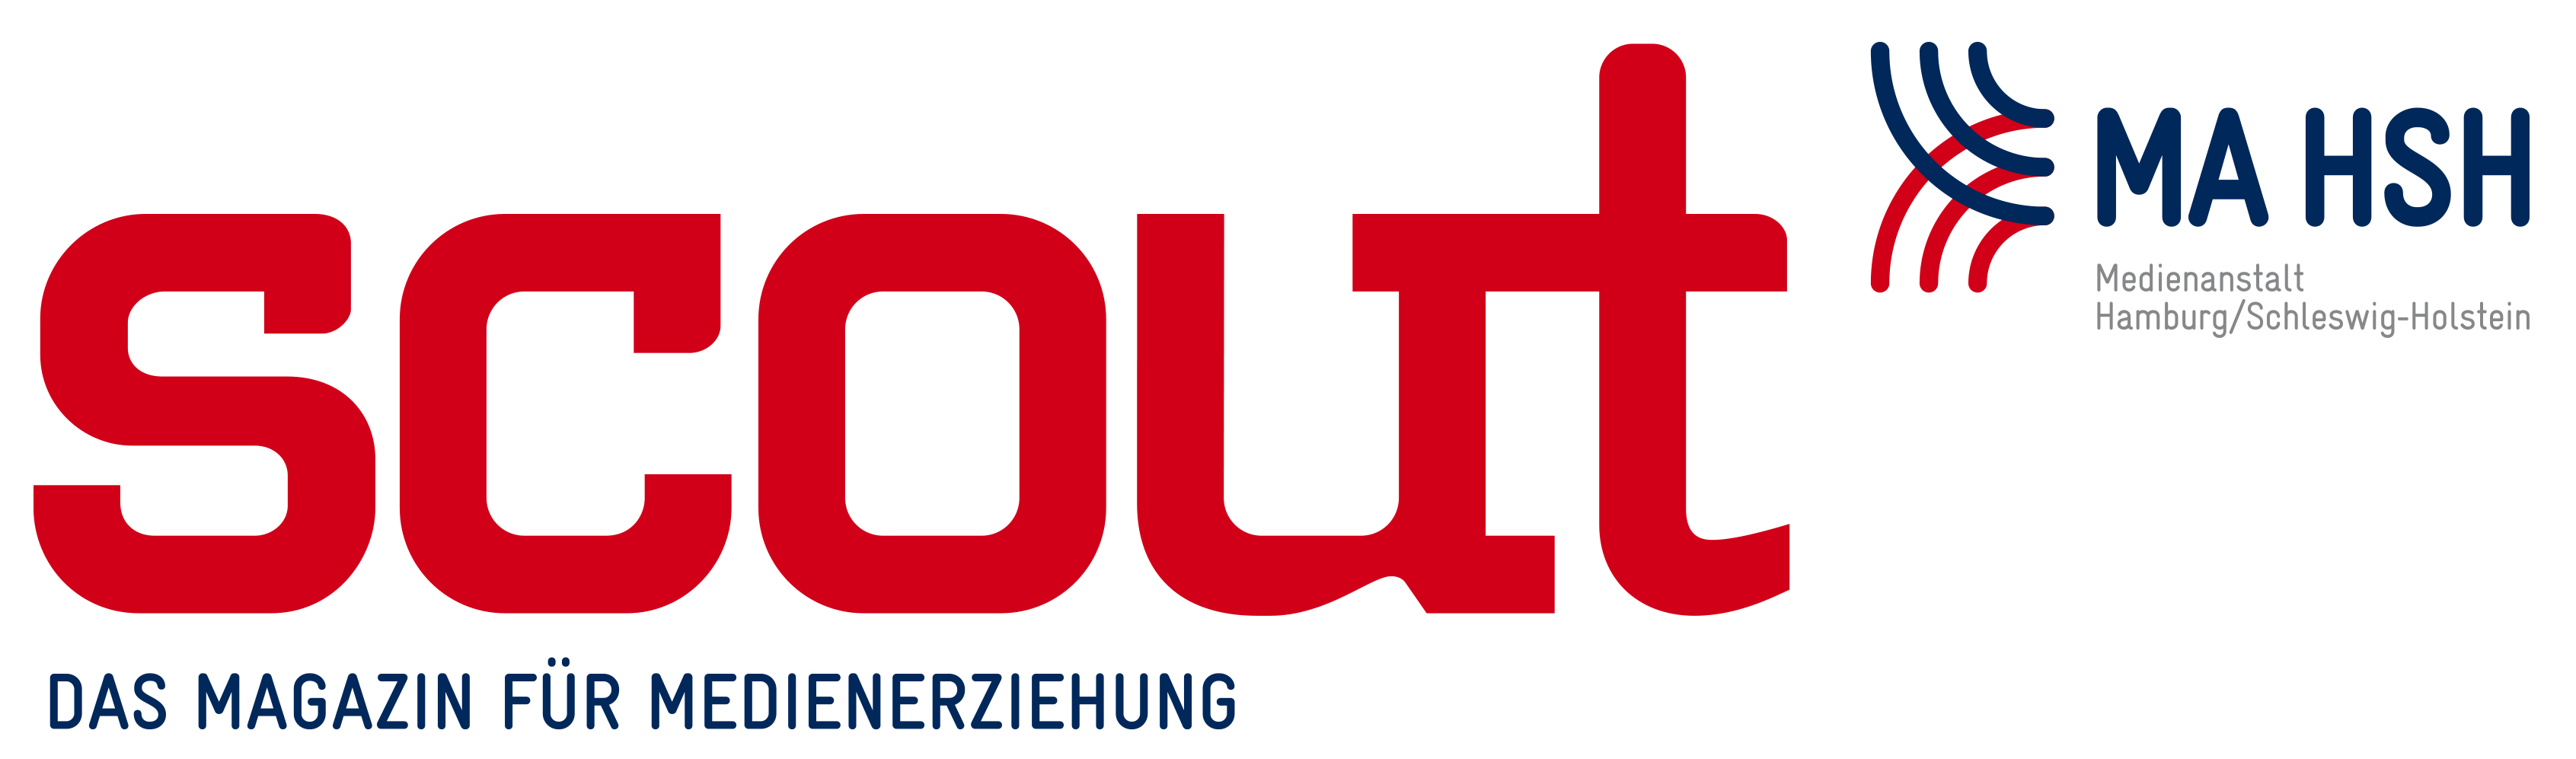 Logo des Magazins für Medienerziehung "scout" der Medienanstalt Hamburg/Schleswig-Holstein